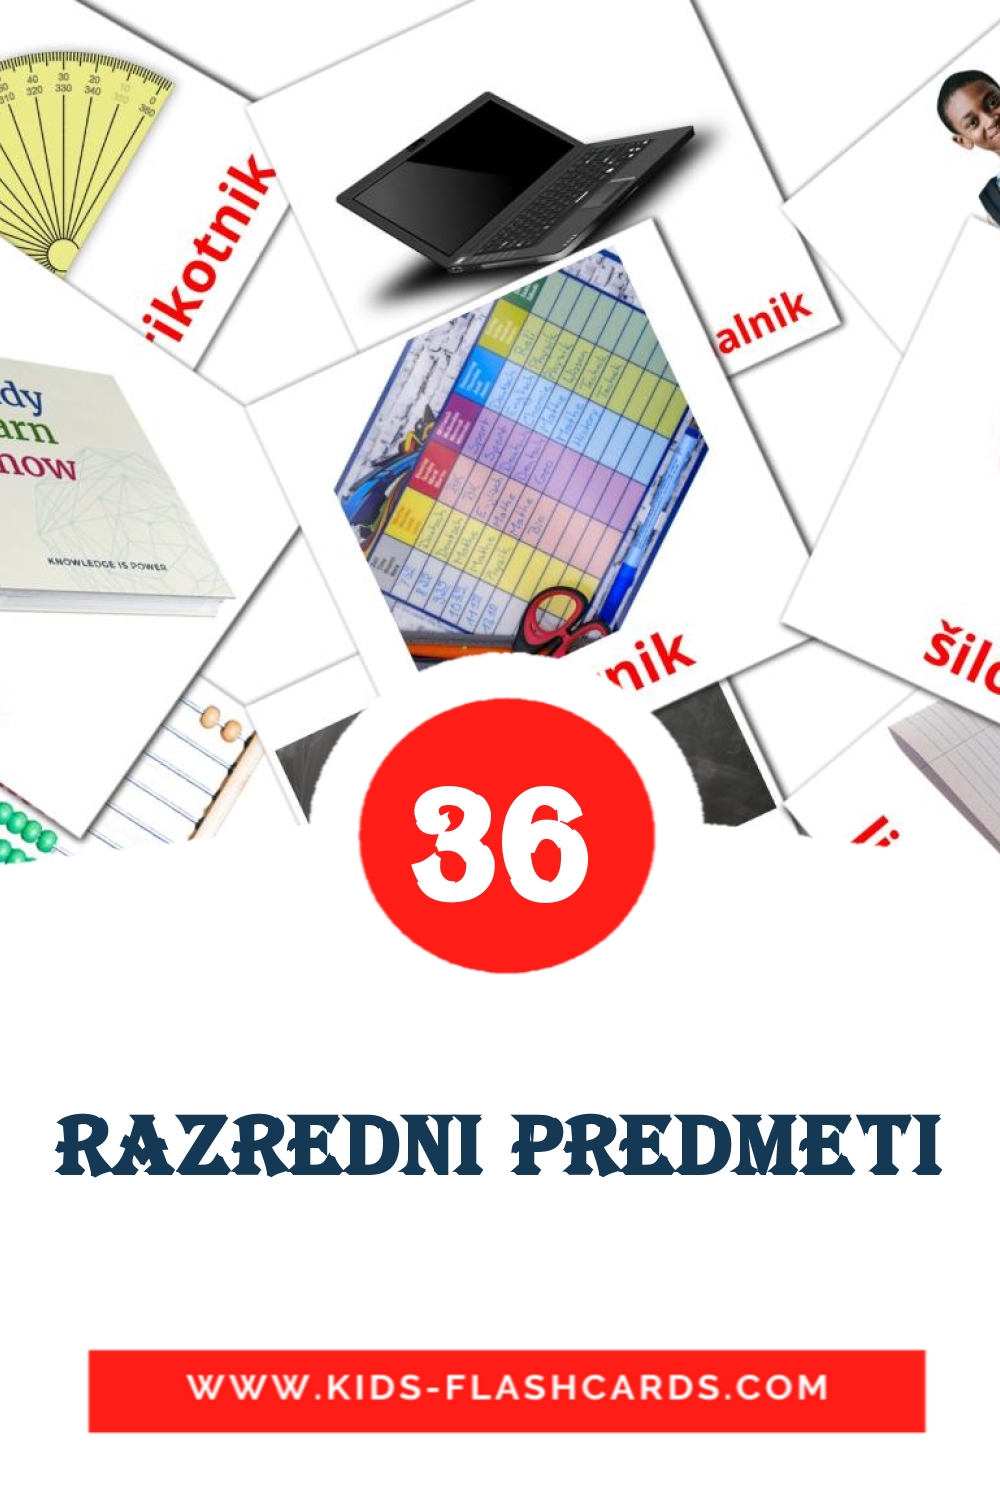 36 Razredni predmeti Bildkarten für den Kindergarten auf Slowenisch